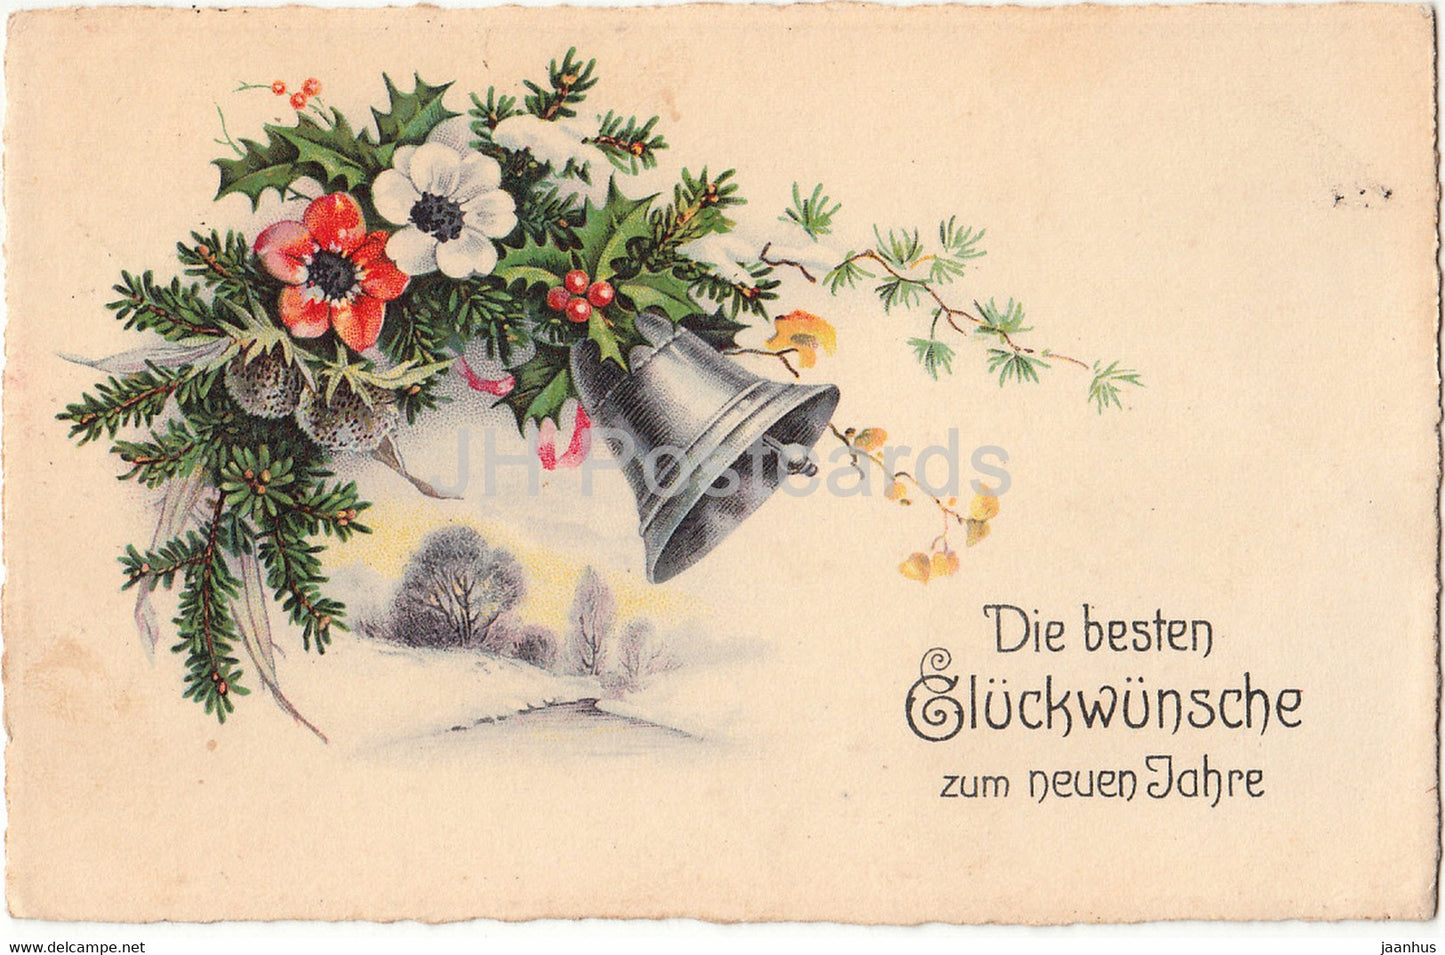 New Year Greeting Card - Die besten Gluckwunsche zum neuen Jahre - Erika 6426 - old postcard - 1933 - Germany - used - JH Postcards